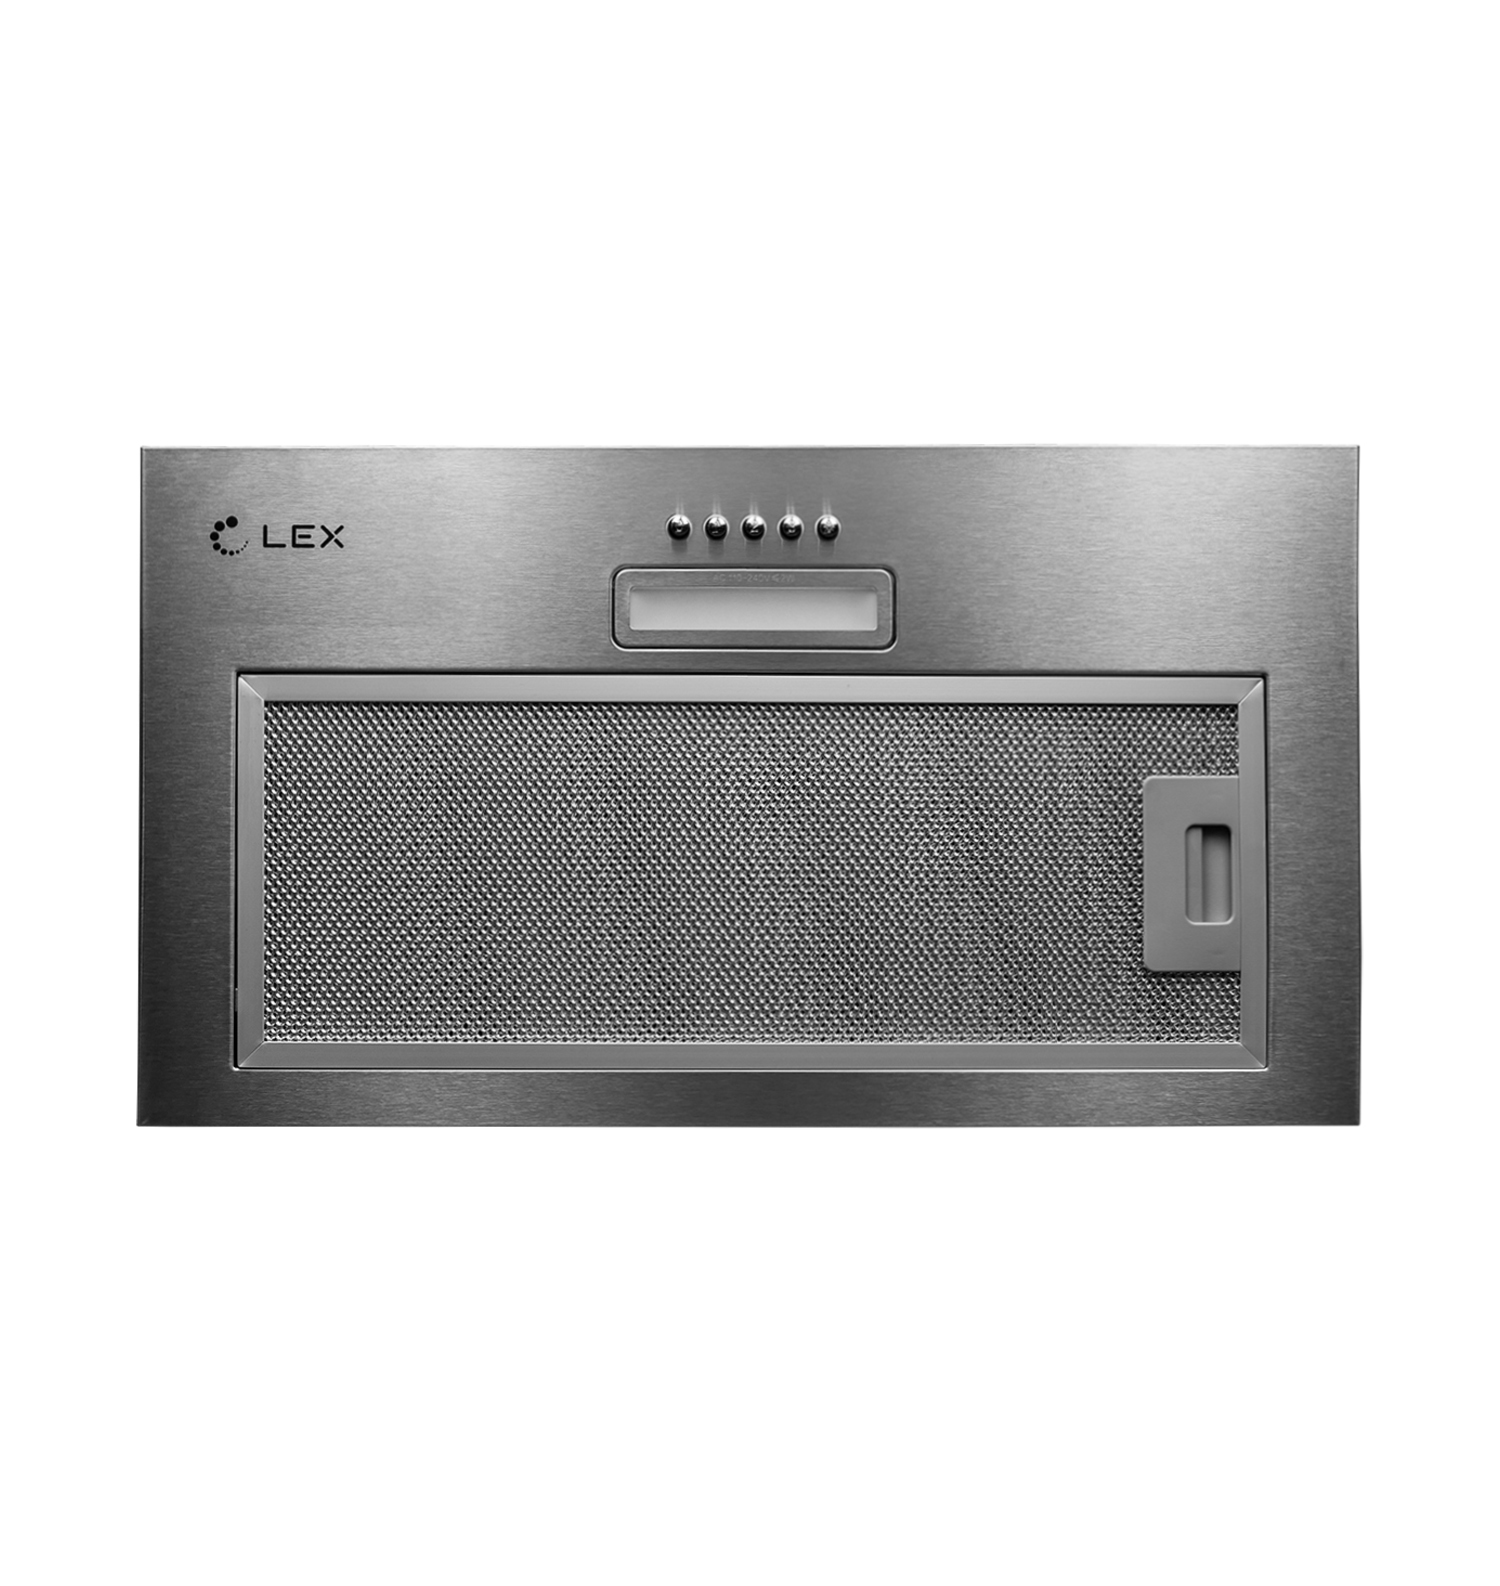 Кухонная вытяжка встраиваемая Lex GS Bloc Light 60 см серая (CHTI000328)